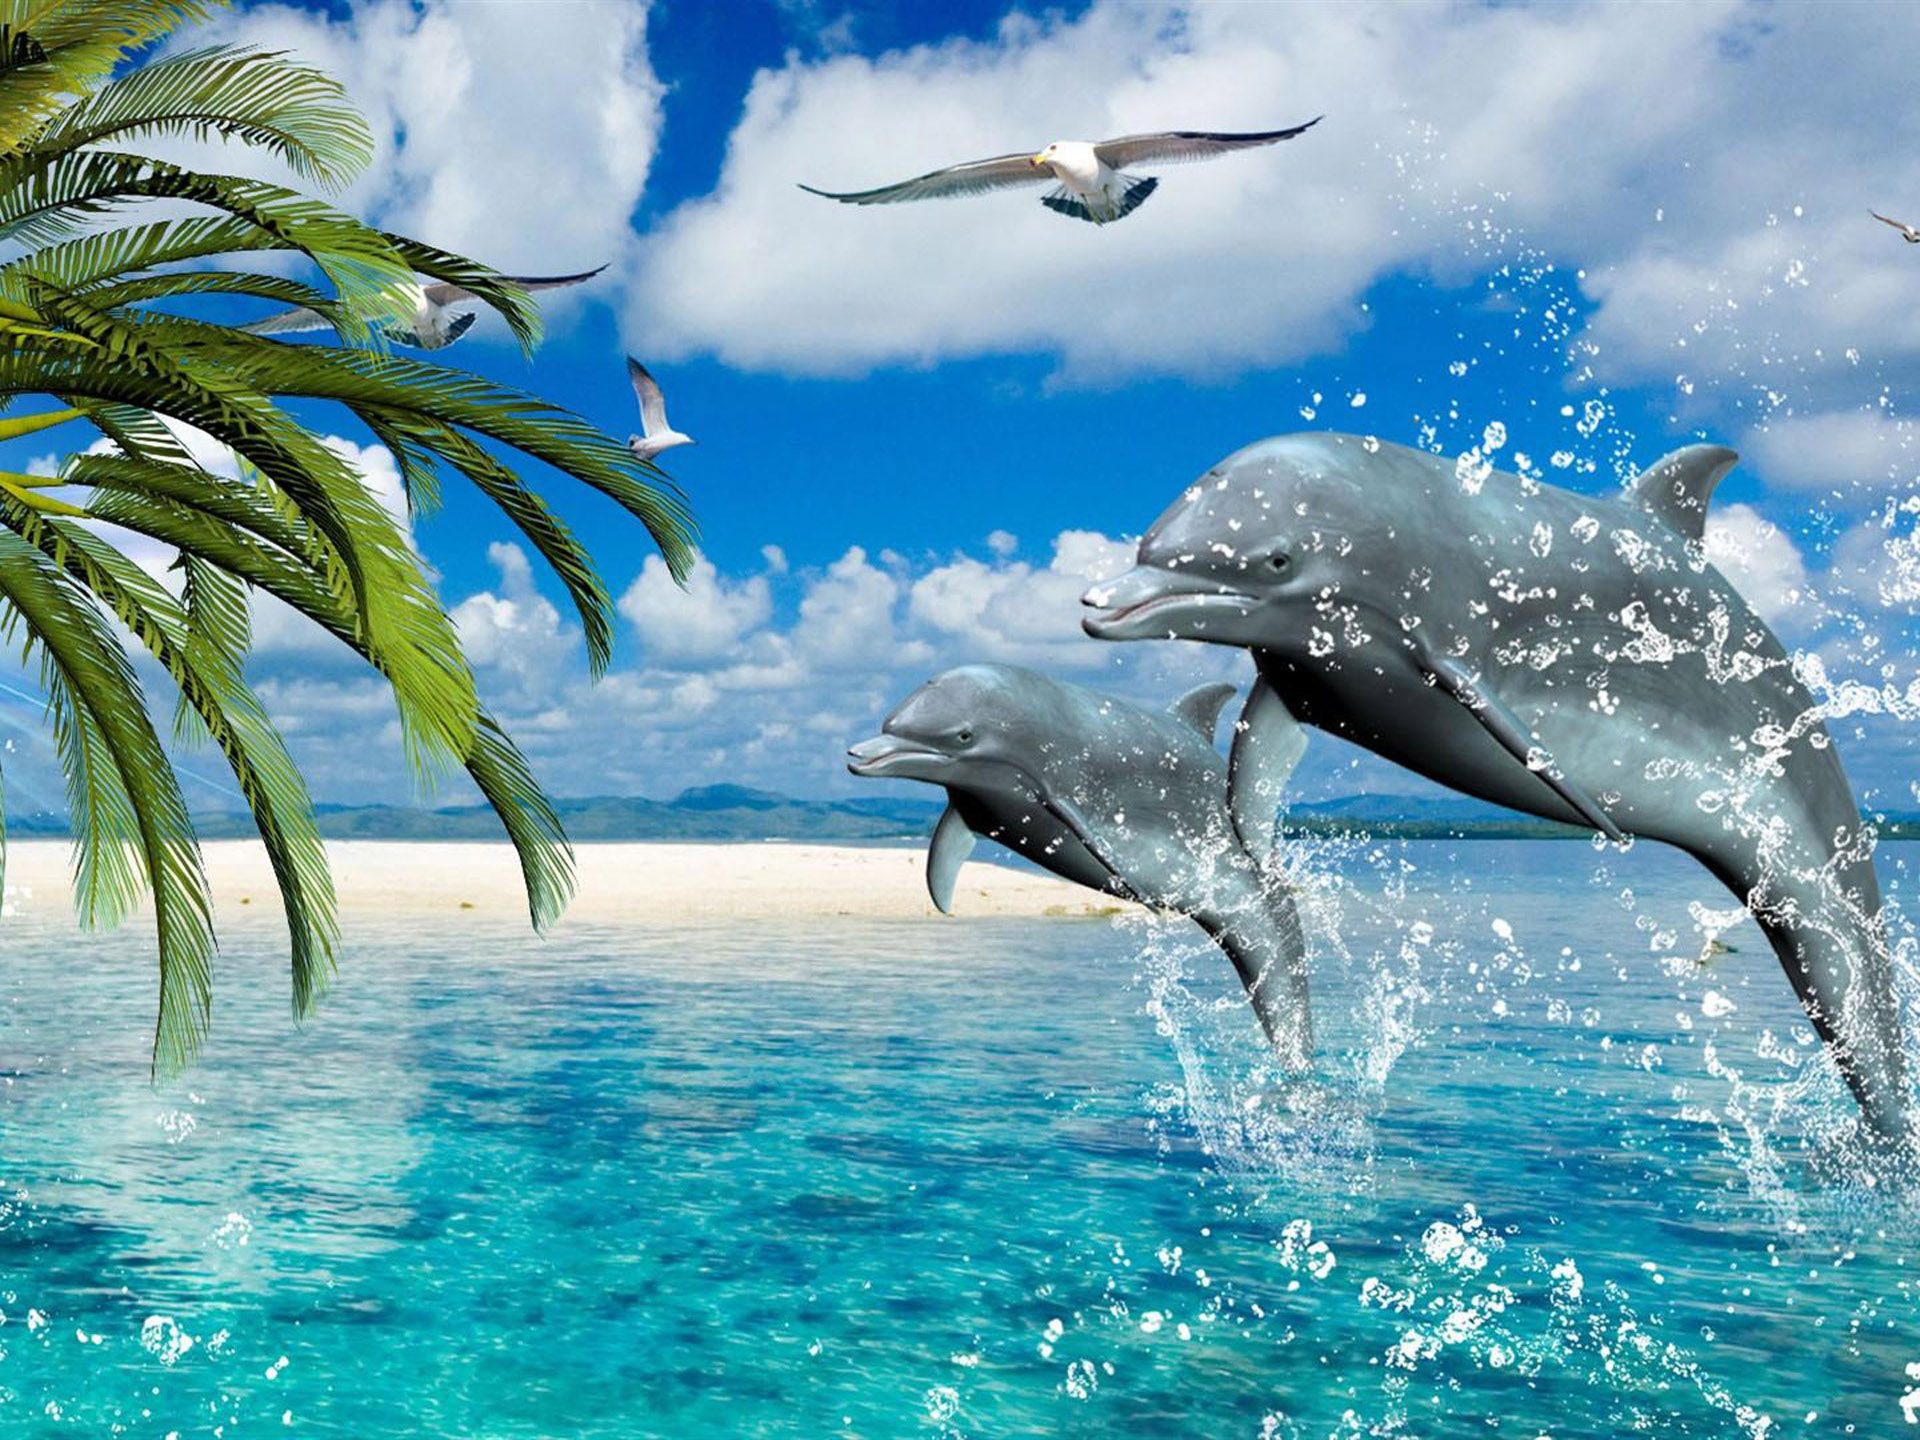 sfondi iphone delfino,delfino,delfino tursiope,delfino di tursiope comune,delfino comune dal becco corto,mammifero marino